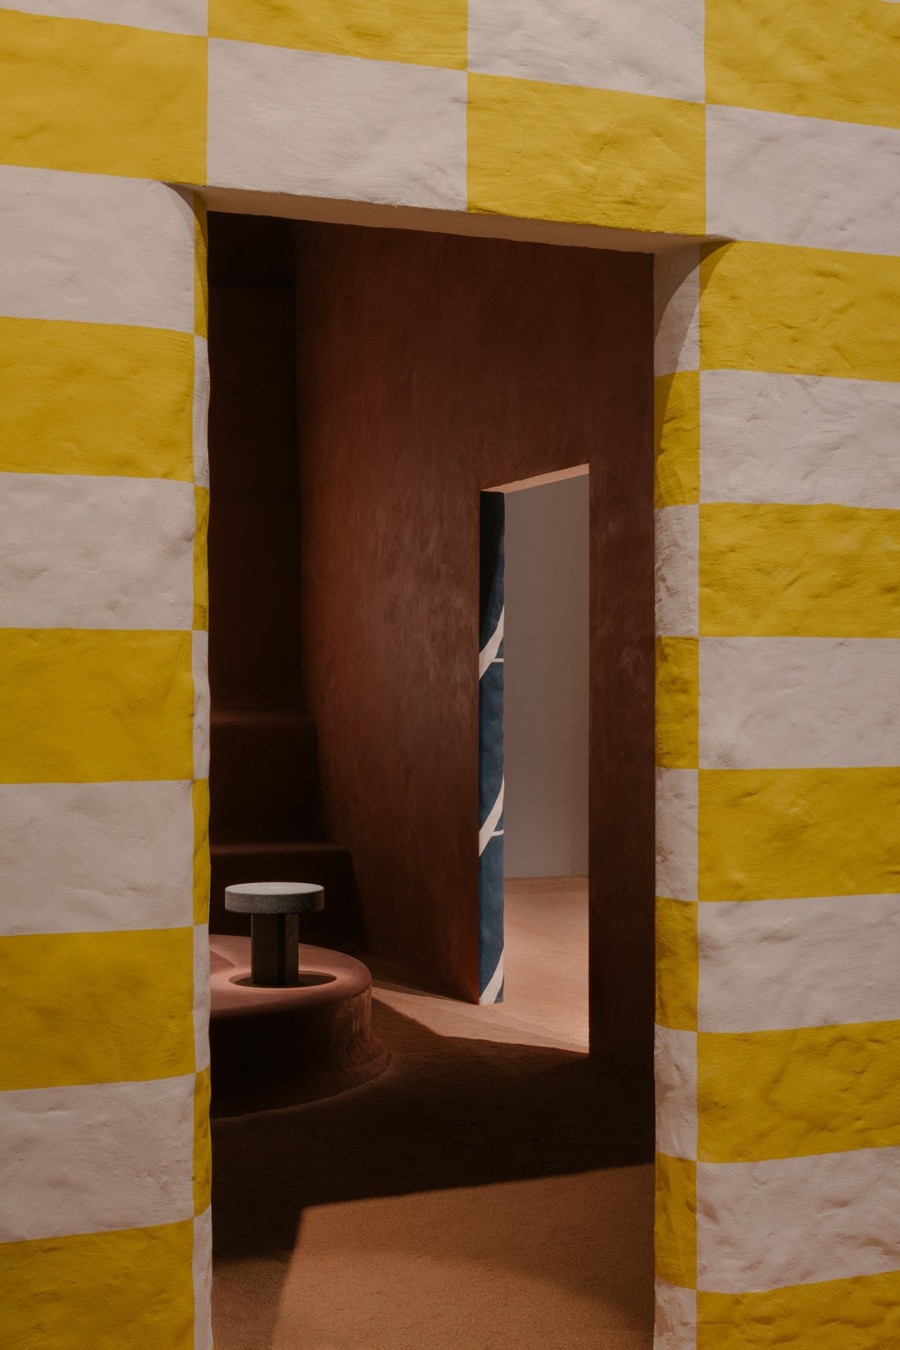 Το installation της Hermès στη Salone del mobile παρουσιάζει τα πιο φίνα αντικείμενα για το σπίτι - Φωτογραφία 8